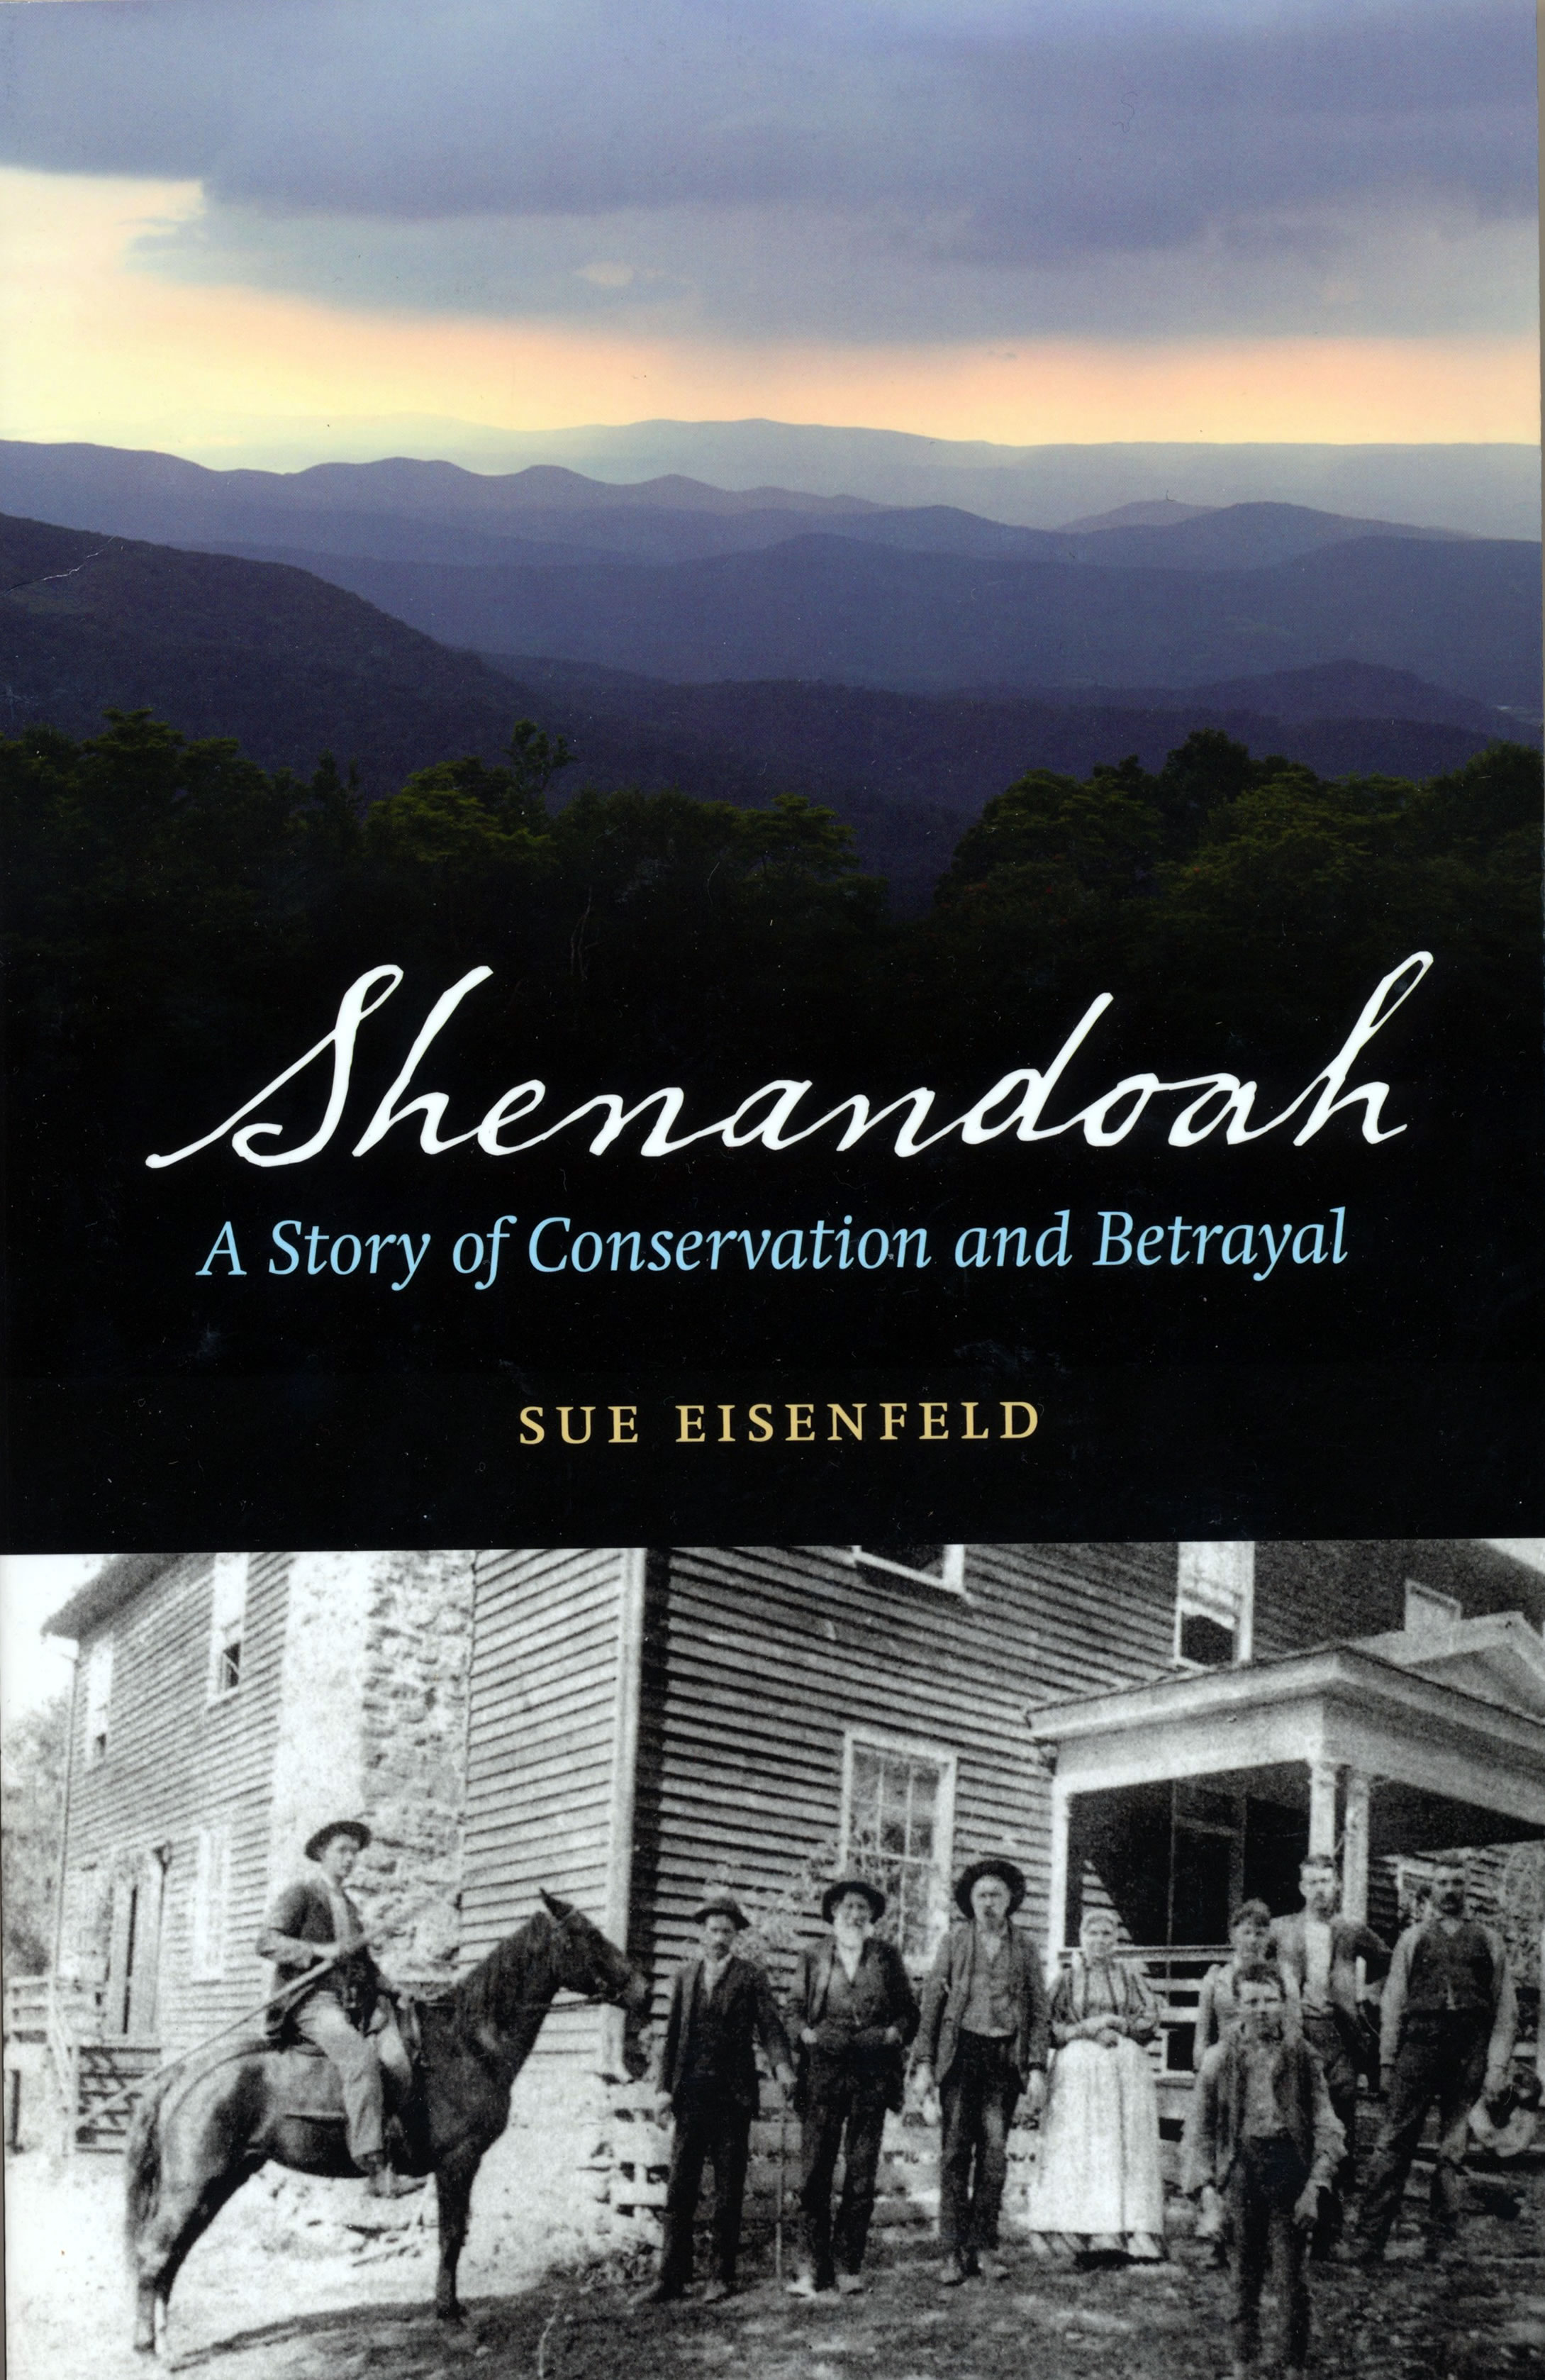 Shenandoah by Sue Eisenfeld